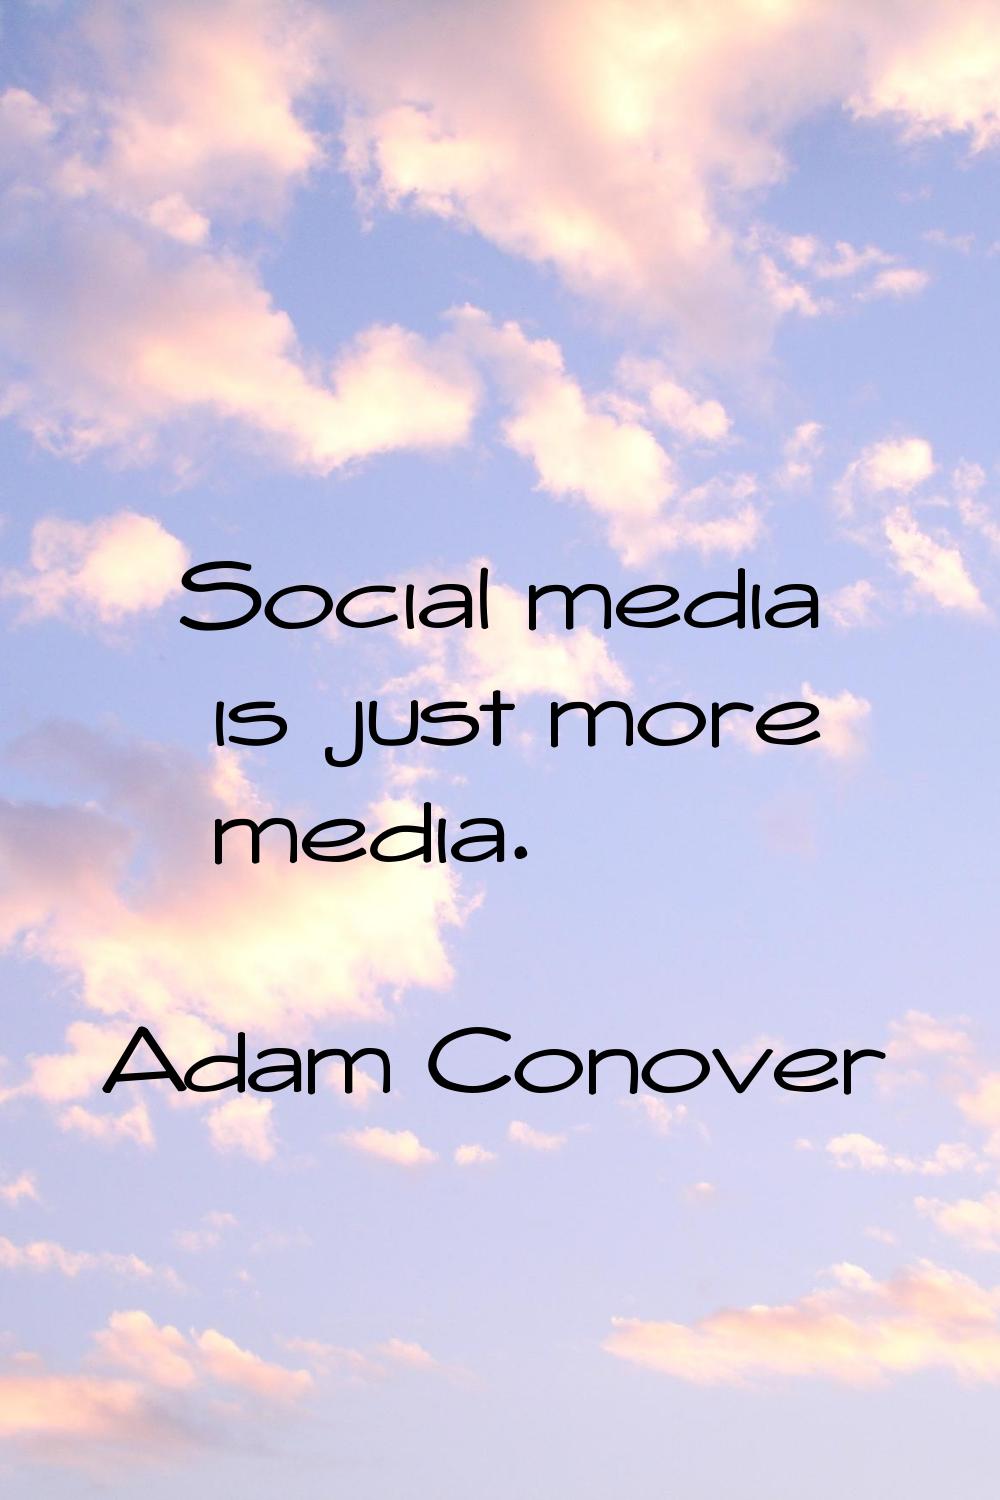 Social media is just more media.